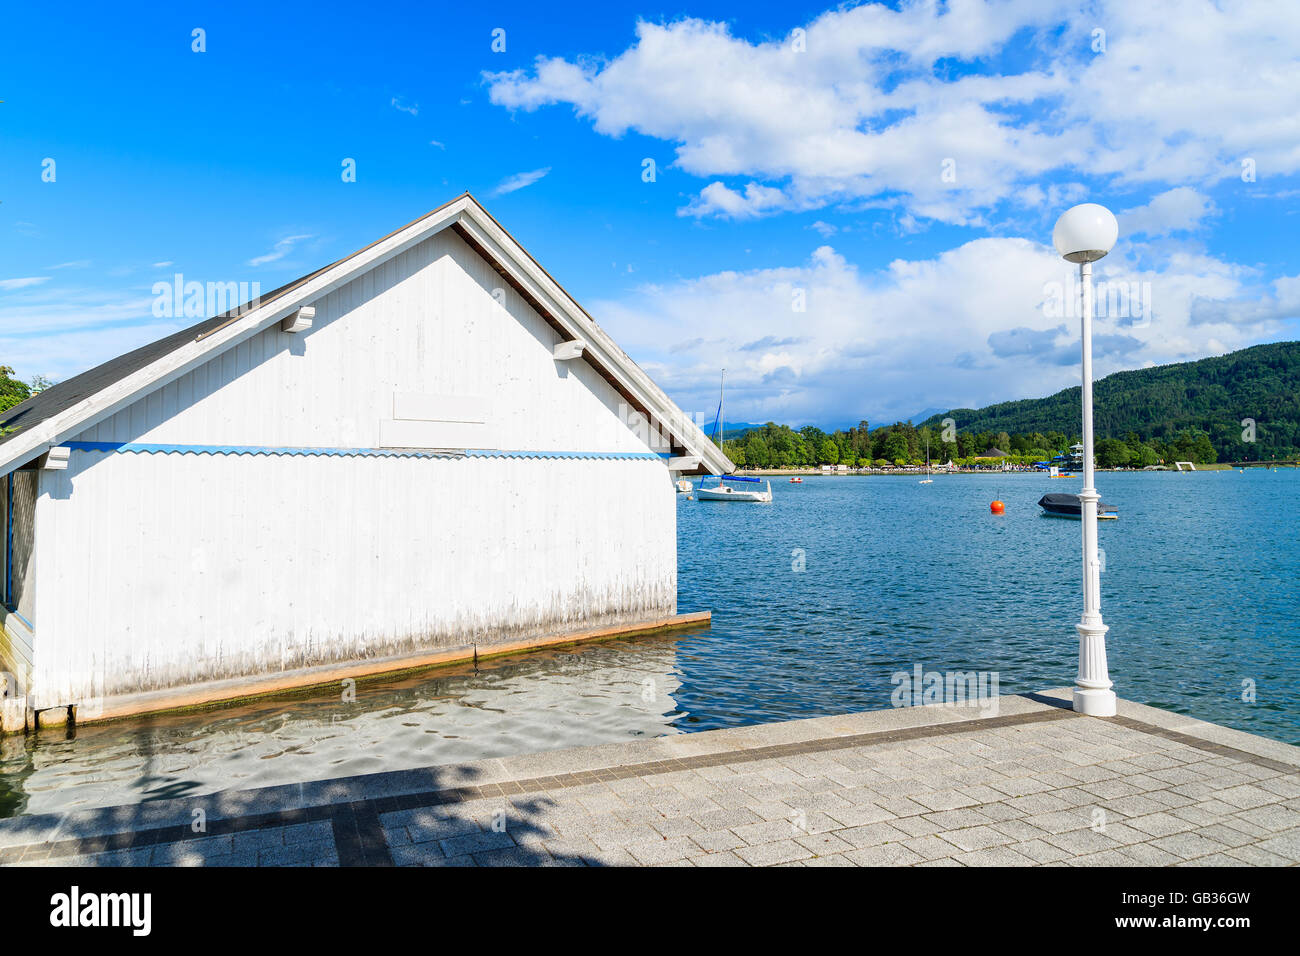 Maison de bateau en bois blanc sur la rive de Worthersee lakeduring l'heure d'été, Autriche Banque D'Images